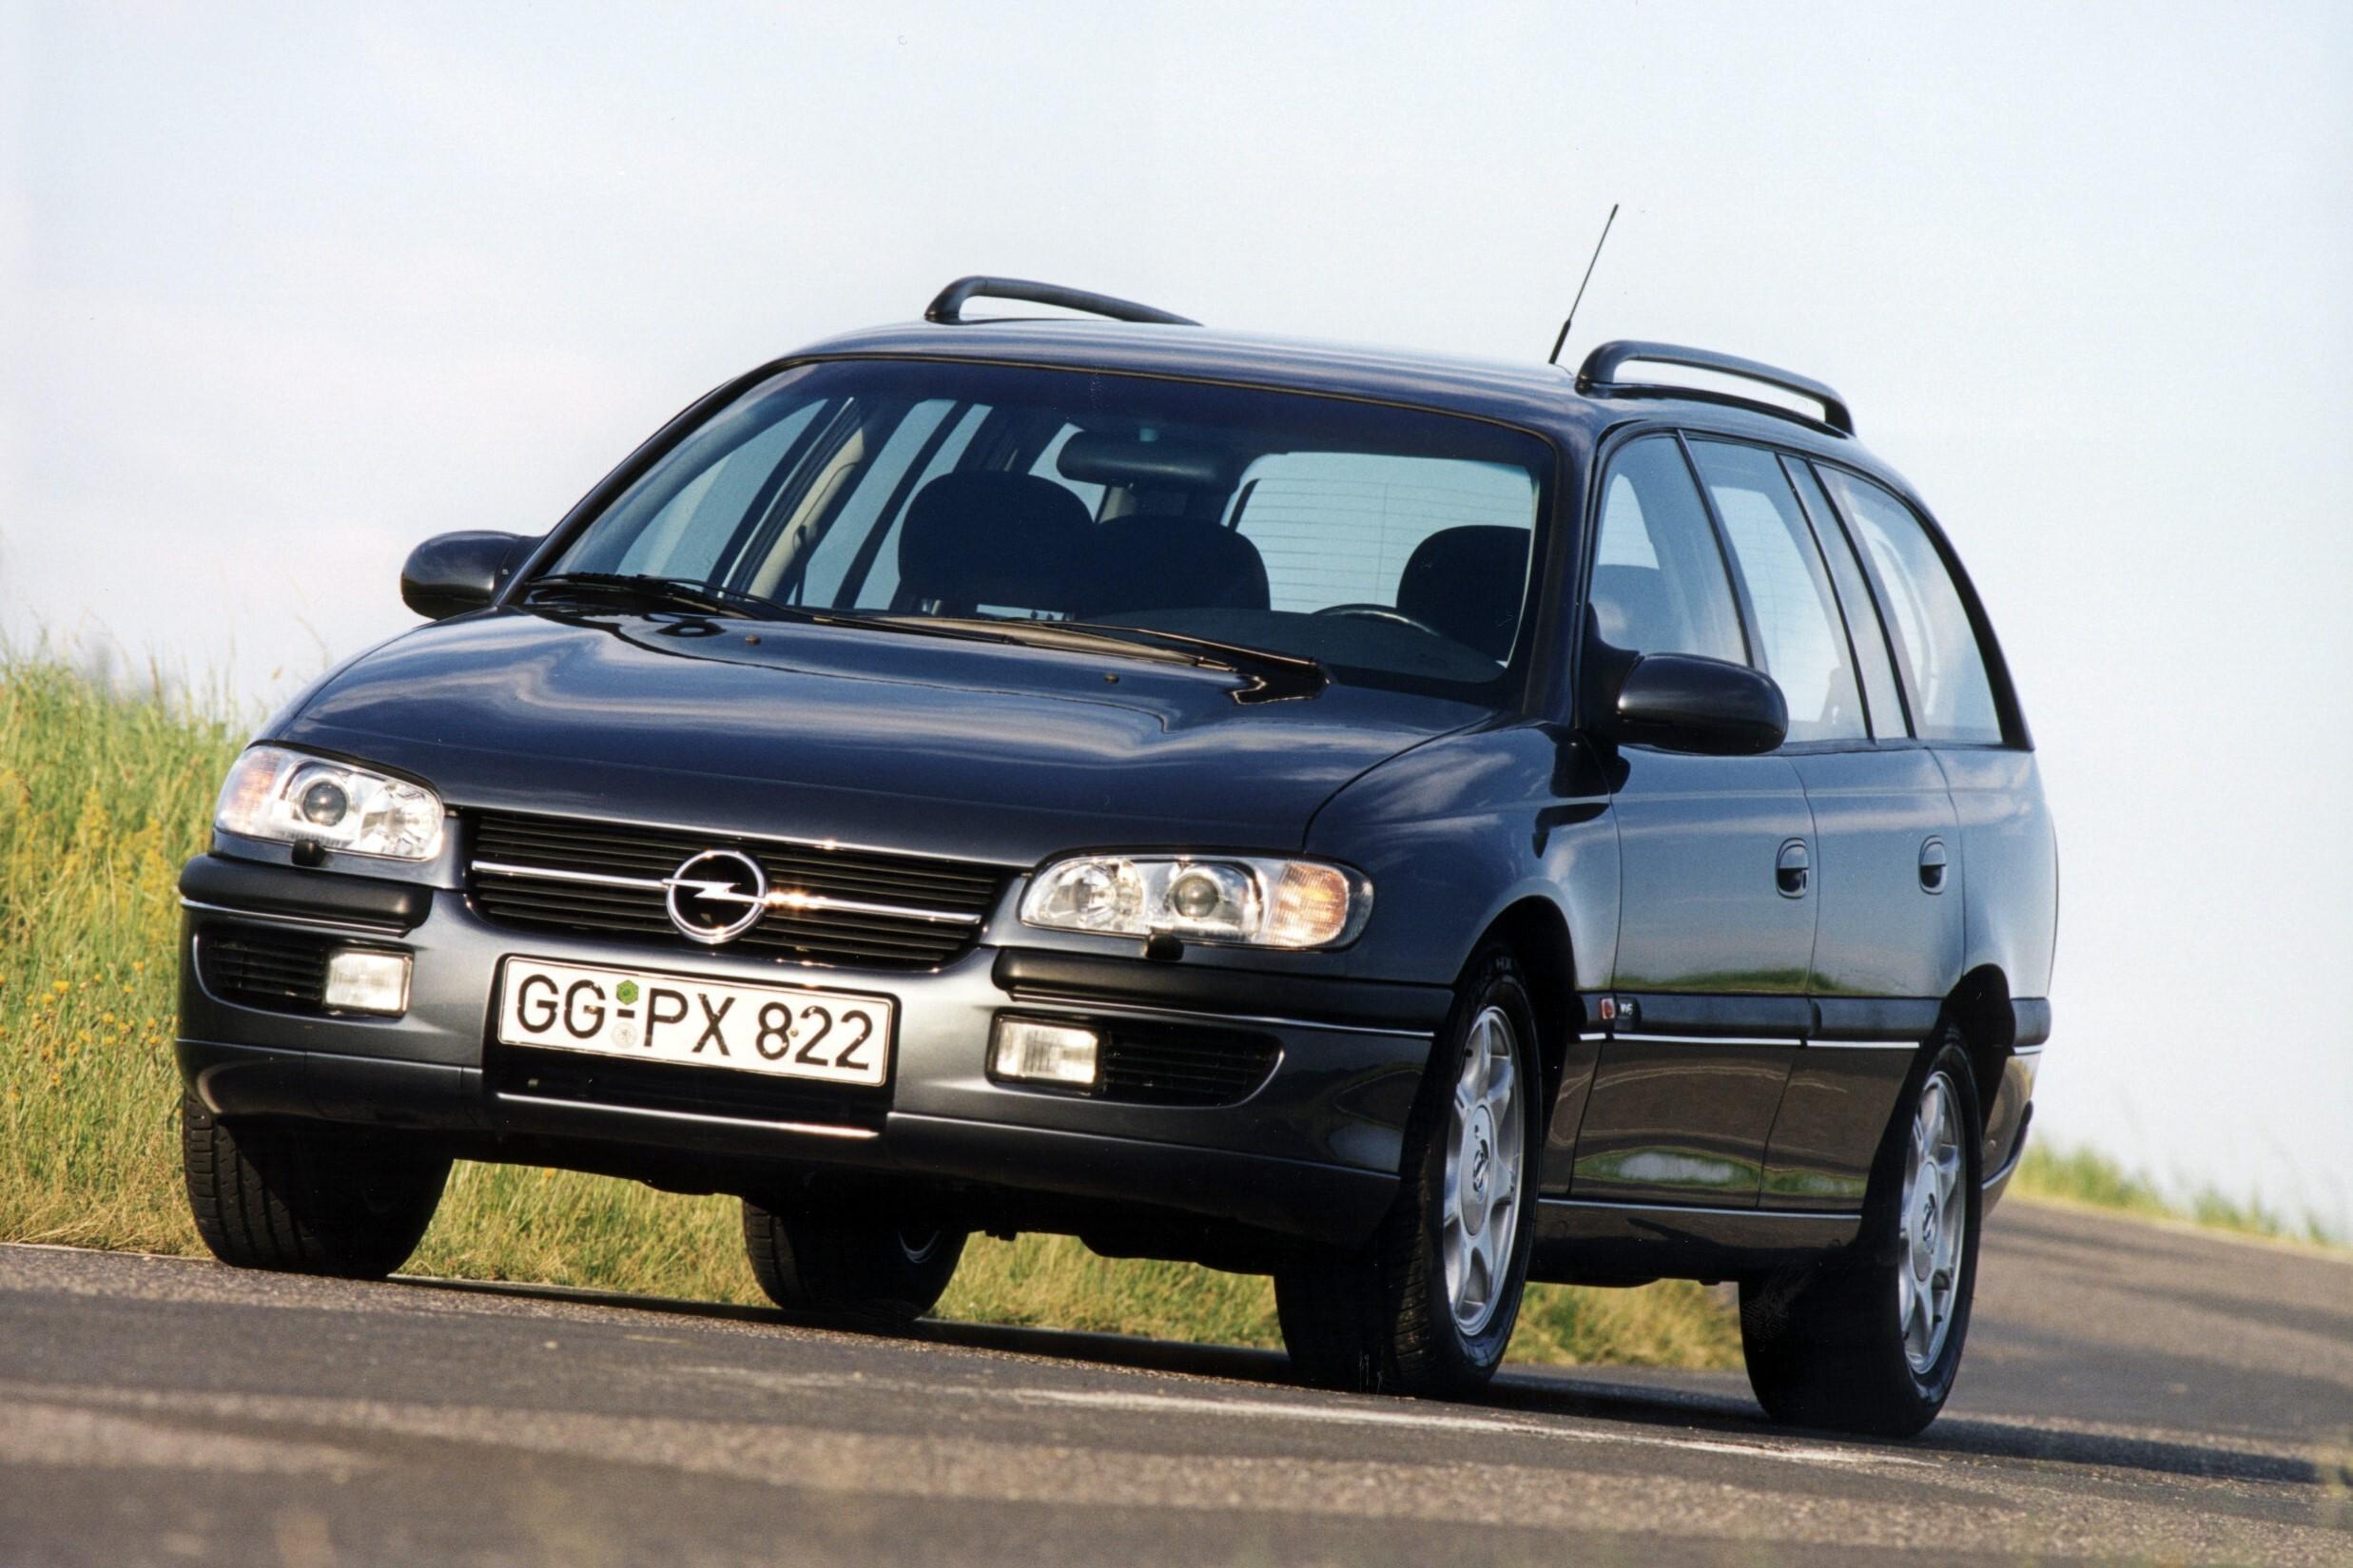 Машина омега б. Opel Omega, 1994 универсал. Opel Omega b 1994-1999. Opel Omega b. Opel Omega универсал 2000.